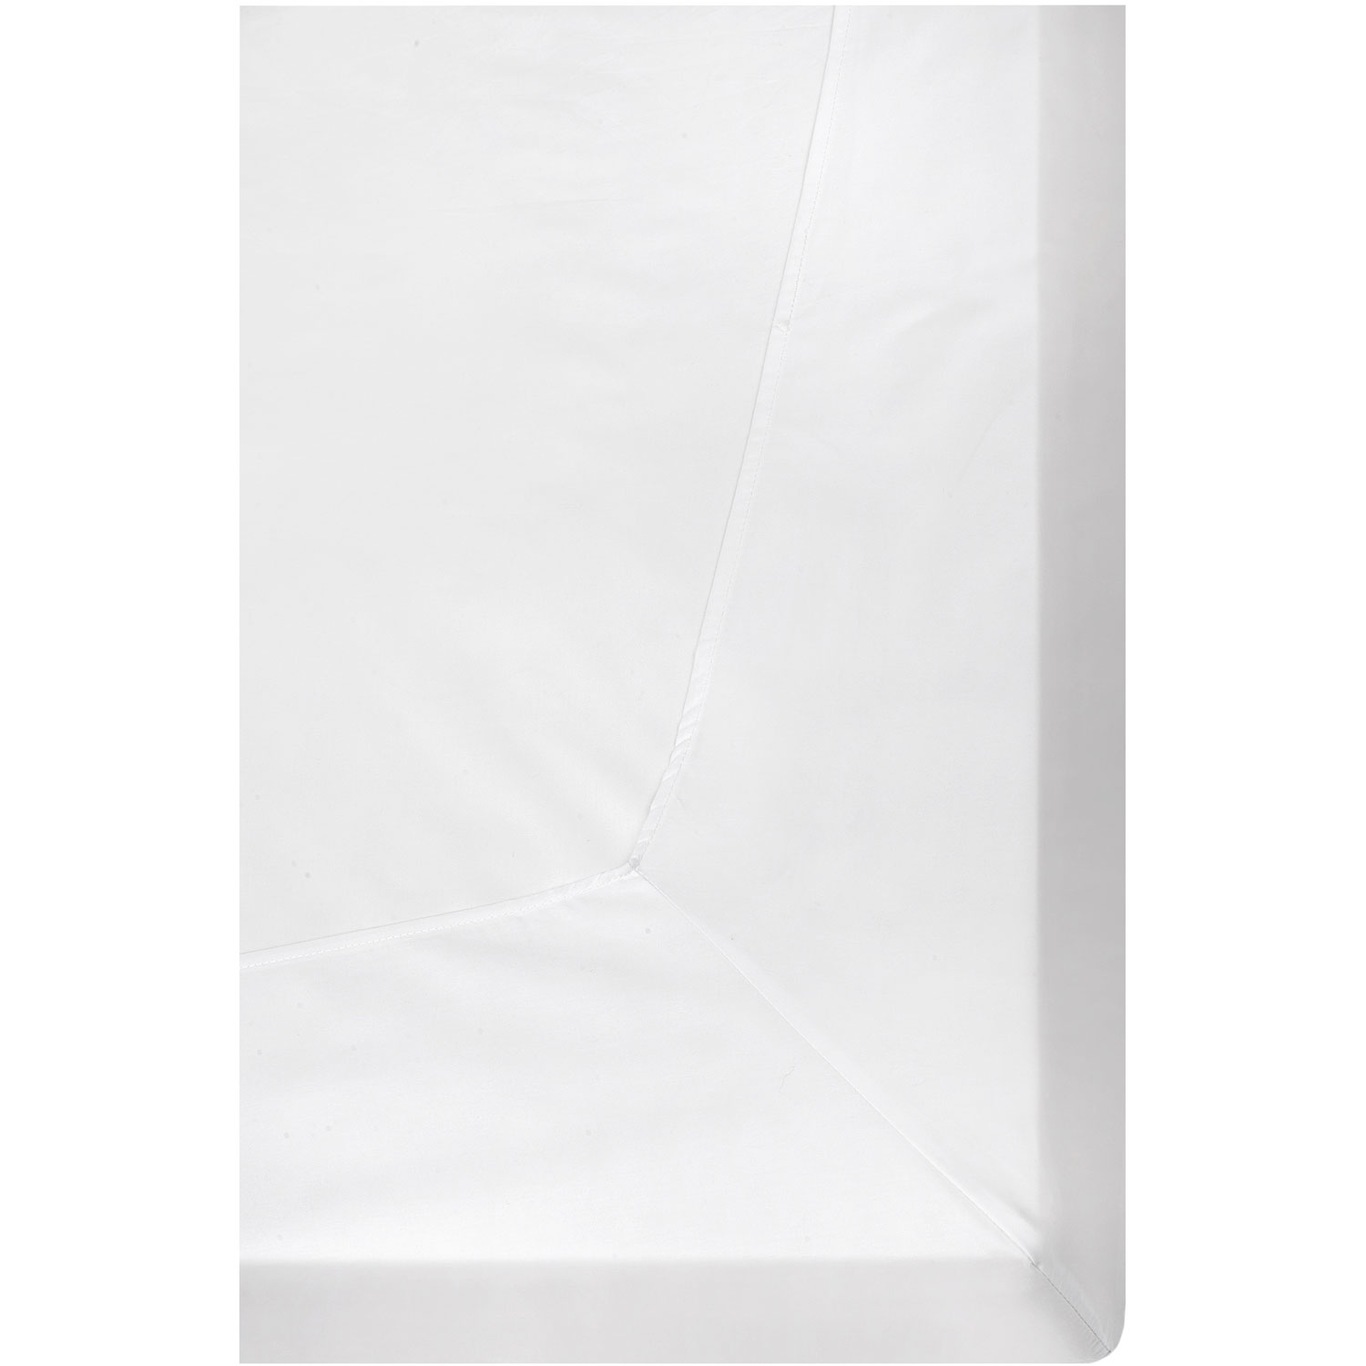 Dreamtime Spannbettlaken Für Topper Weiß, 180x200 cm